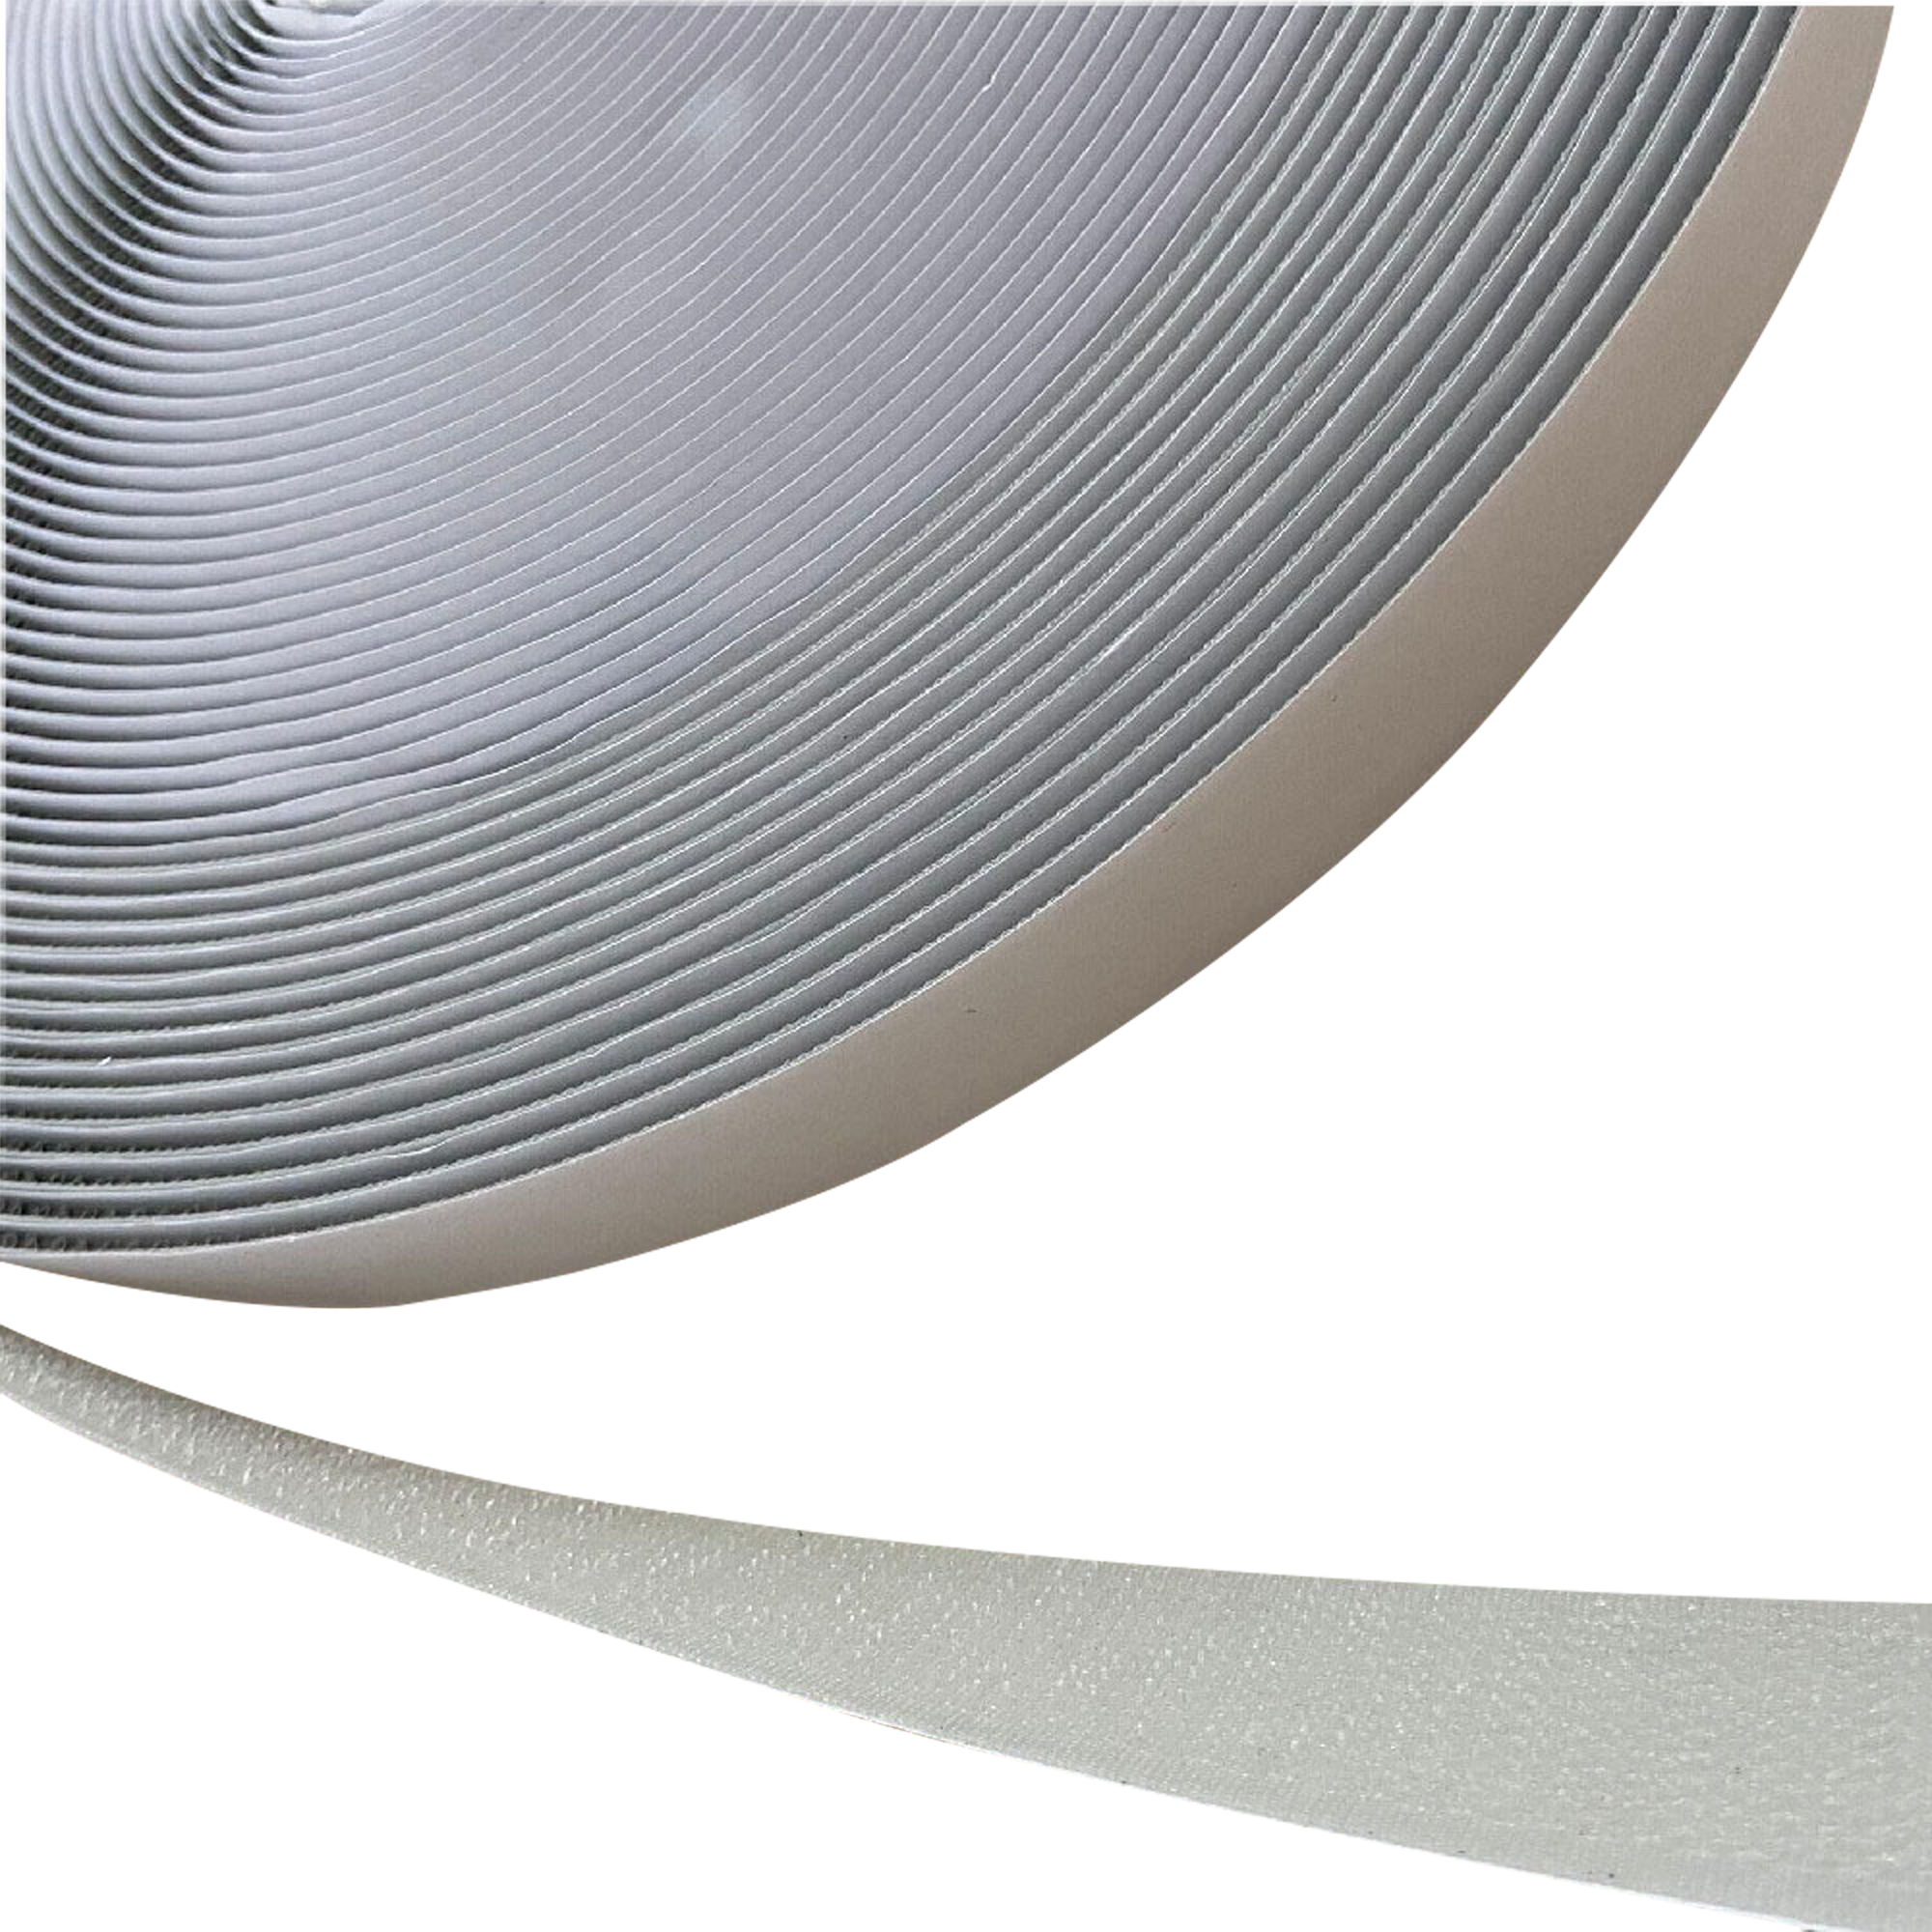 Showgear Hook and Loop Tape - Hook Side Grau - 20 mm x 25 m - selbstklebend